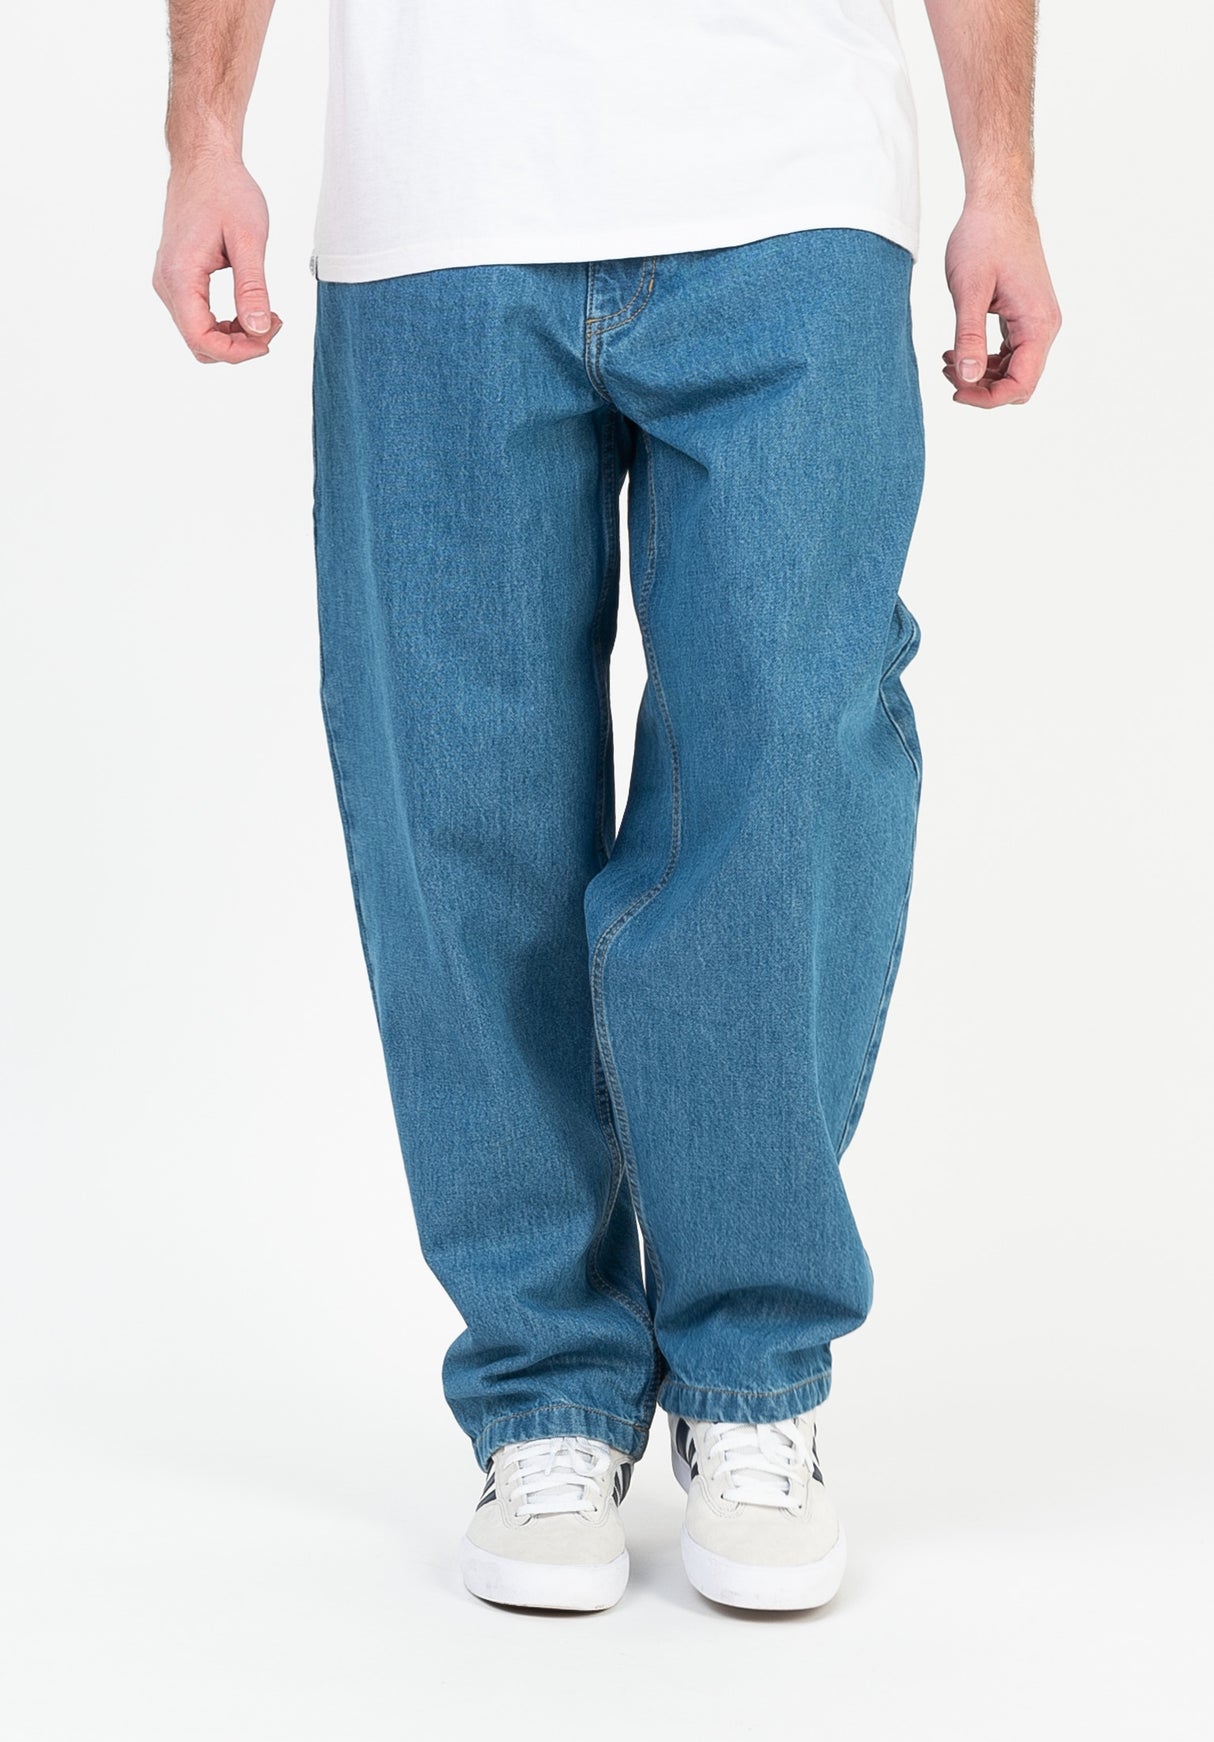 Baggy Reell Jeans in originmidblue für Herren – TITUS